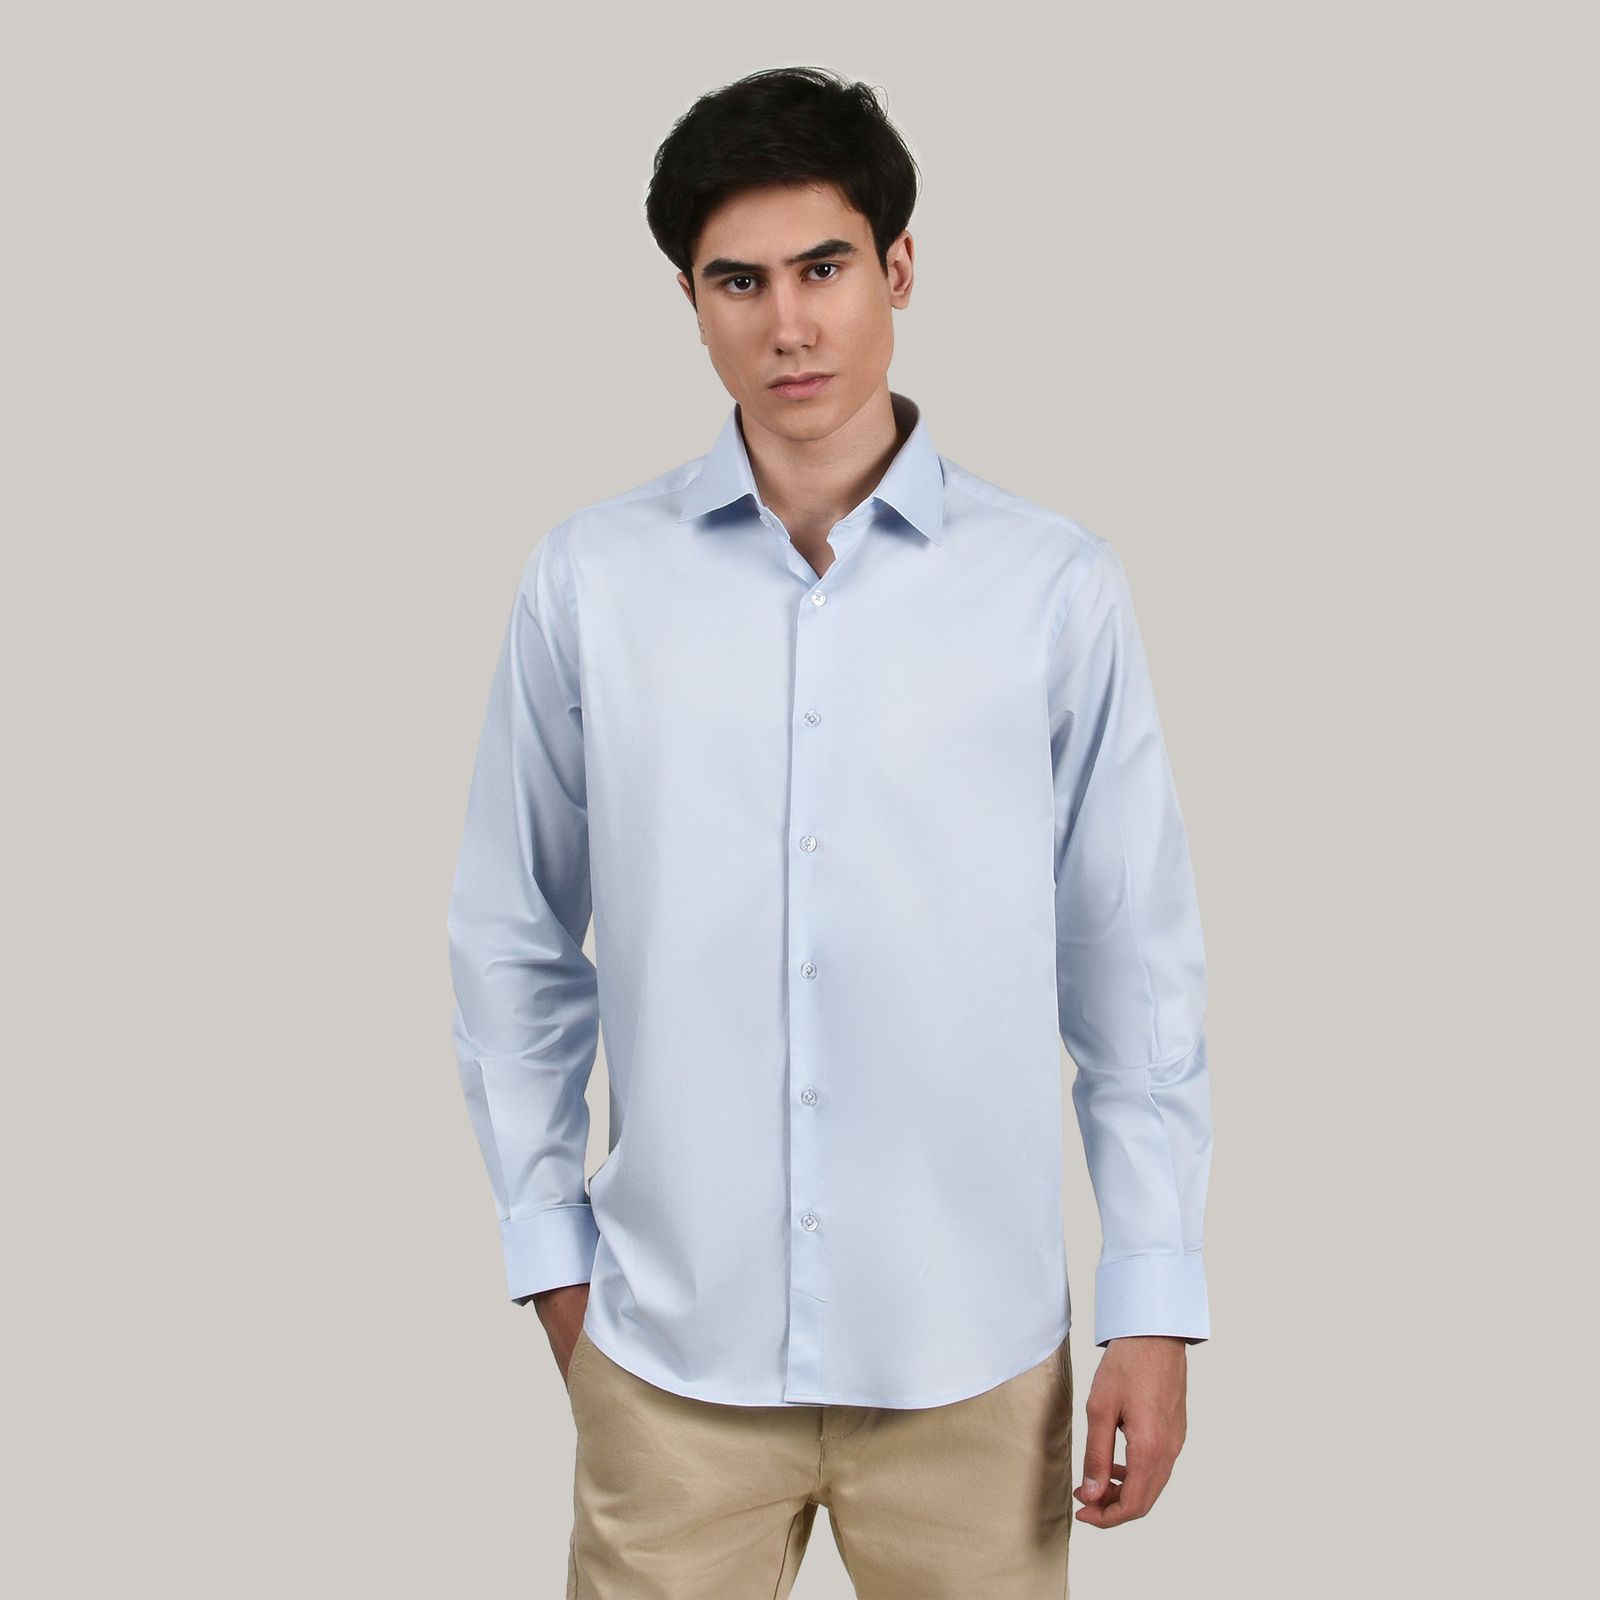 پیراهن آستین بلند مردانه جی تی هوگرو مدل 1021016 -  - 2